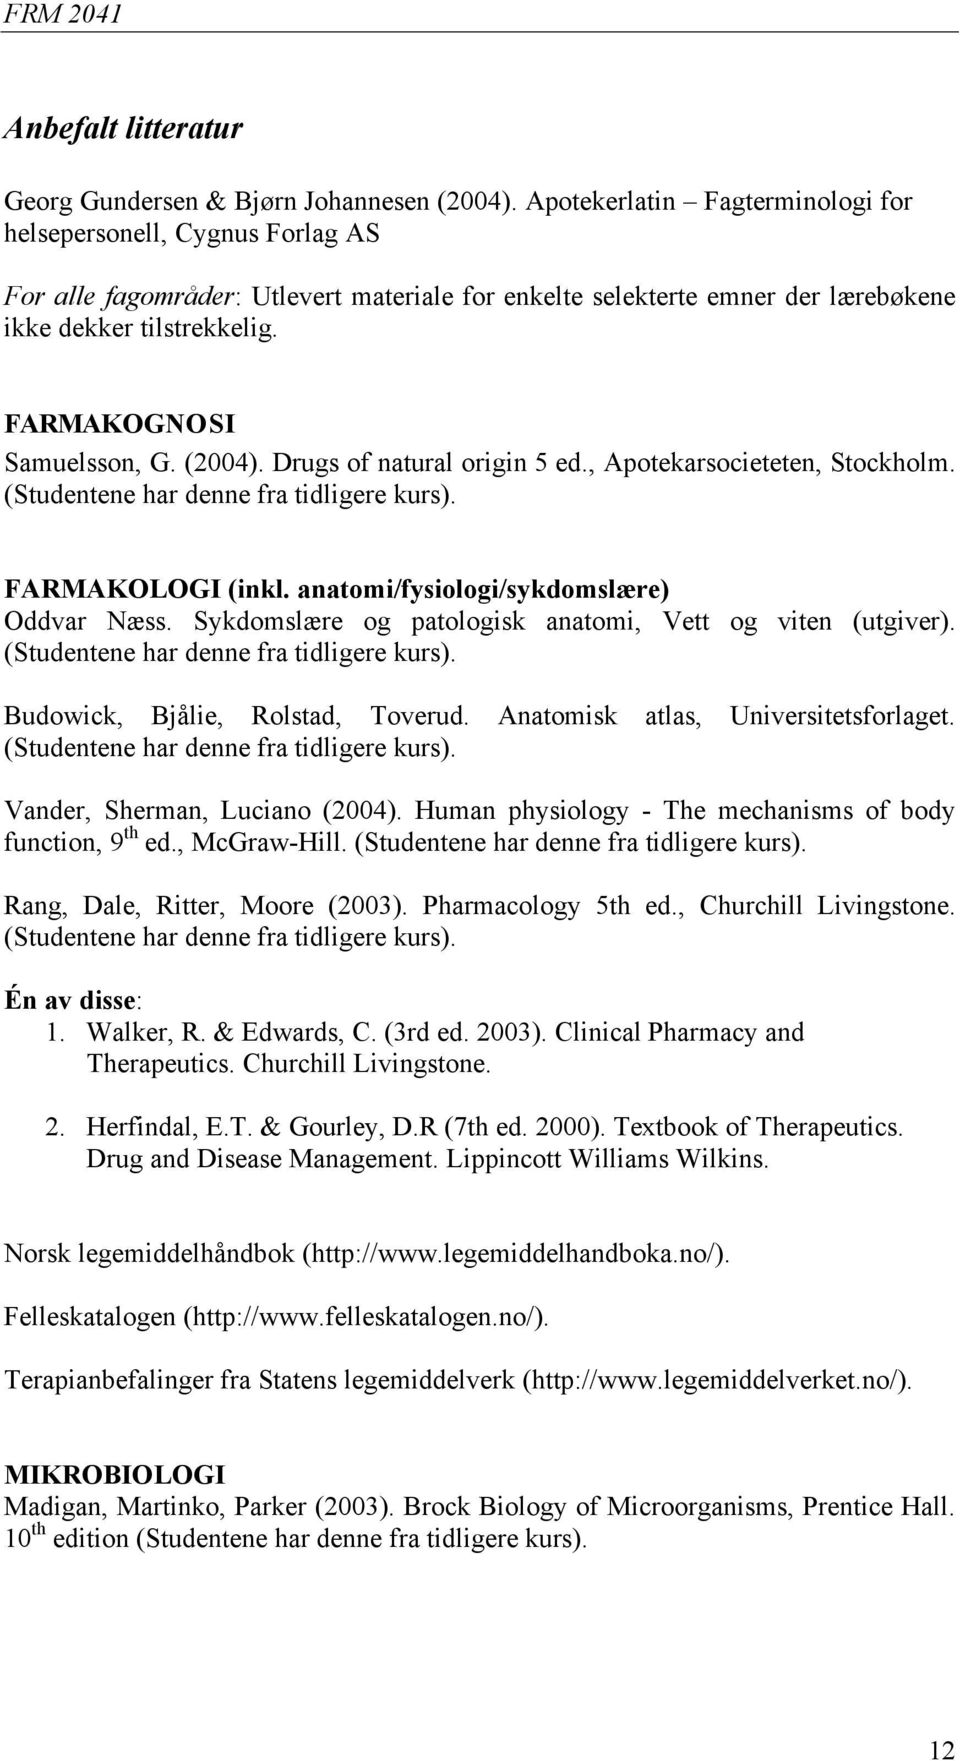 FARMAKOGNOSI Samuelsson, G. (2004). Drugs of natural origin 5 ed., Apotekarsocieteten, Stockholm. (Studentene har denne fra tidligere kurs). FARMAKOLOGI (inkl.